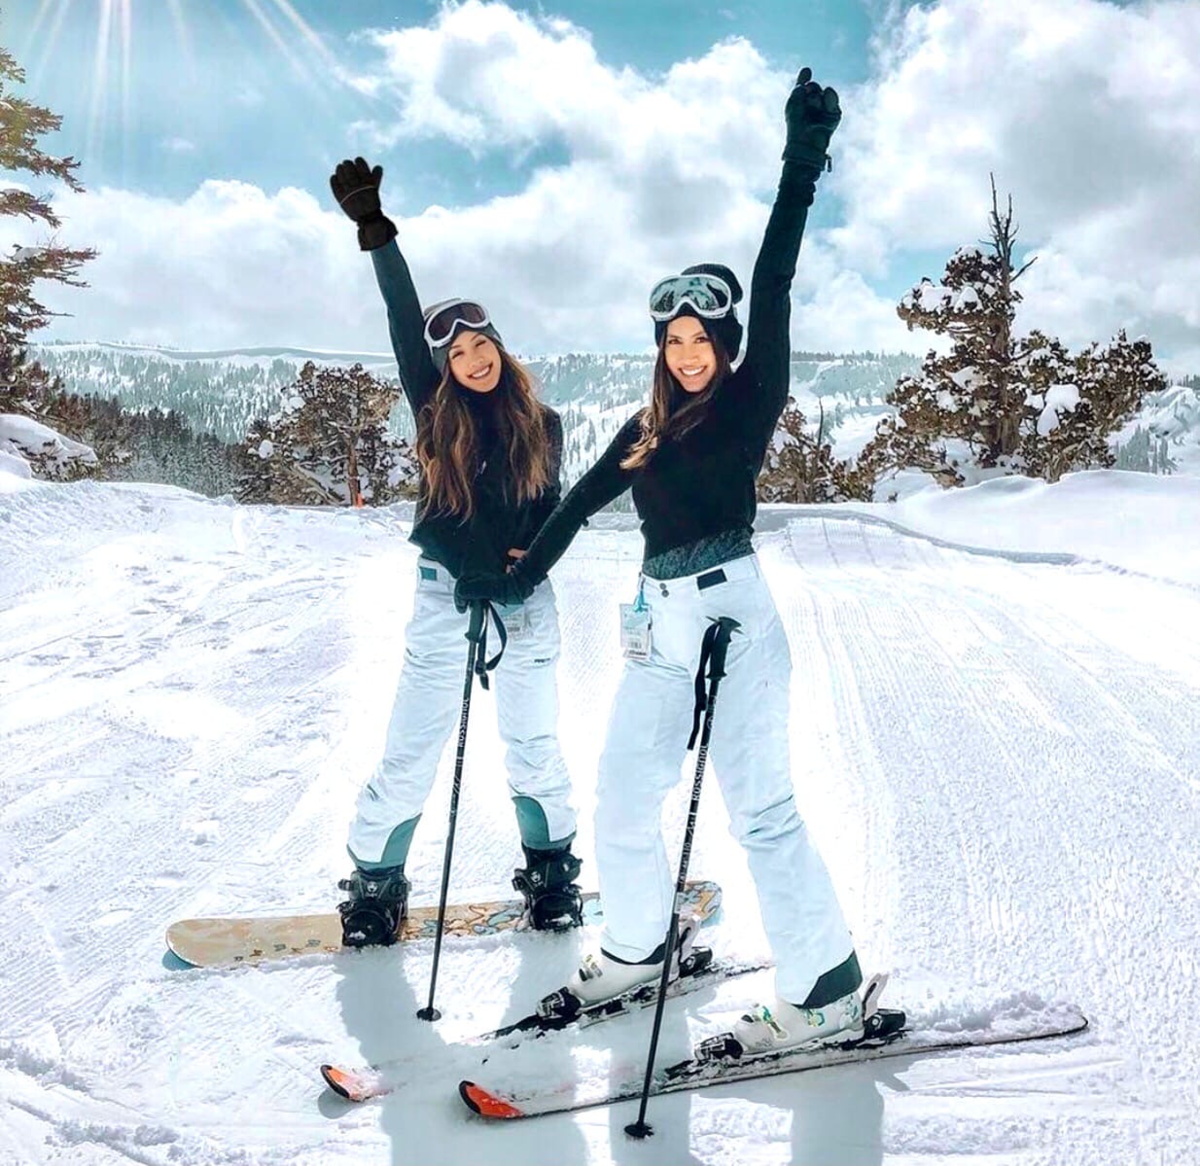 Катание на горнолыжном курорте. Катание на горных лыжах. Девушка на лыжах. Покататься на лыжах. Лыжи зимой.